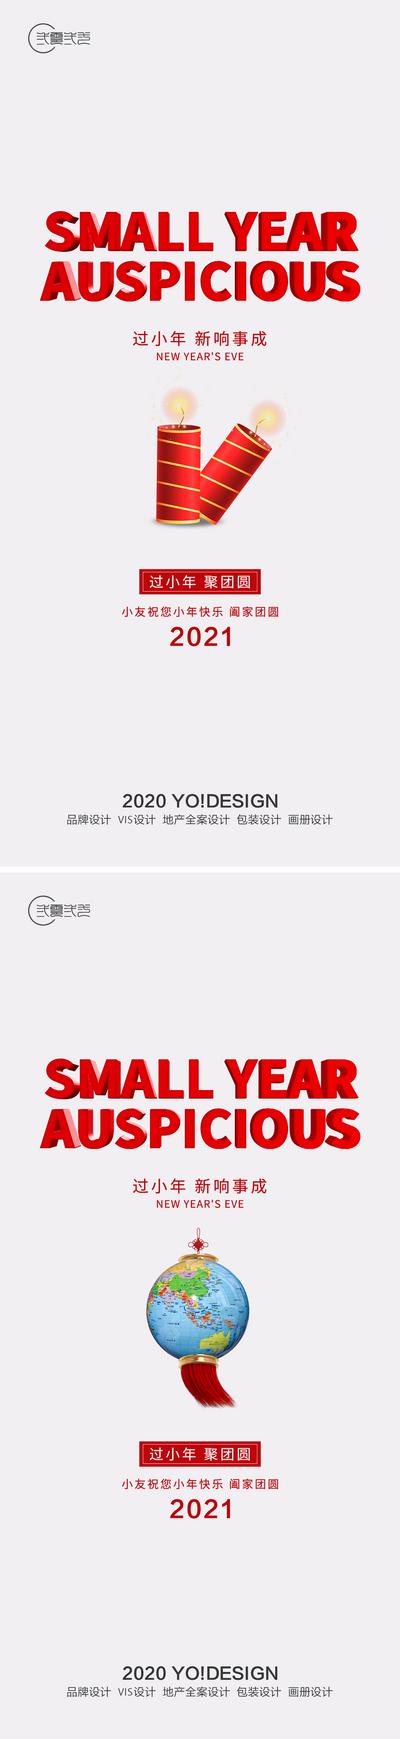 南门网 海报 中国传统节日 2021 小年 蜡烛 地球仪 简约